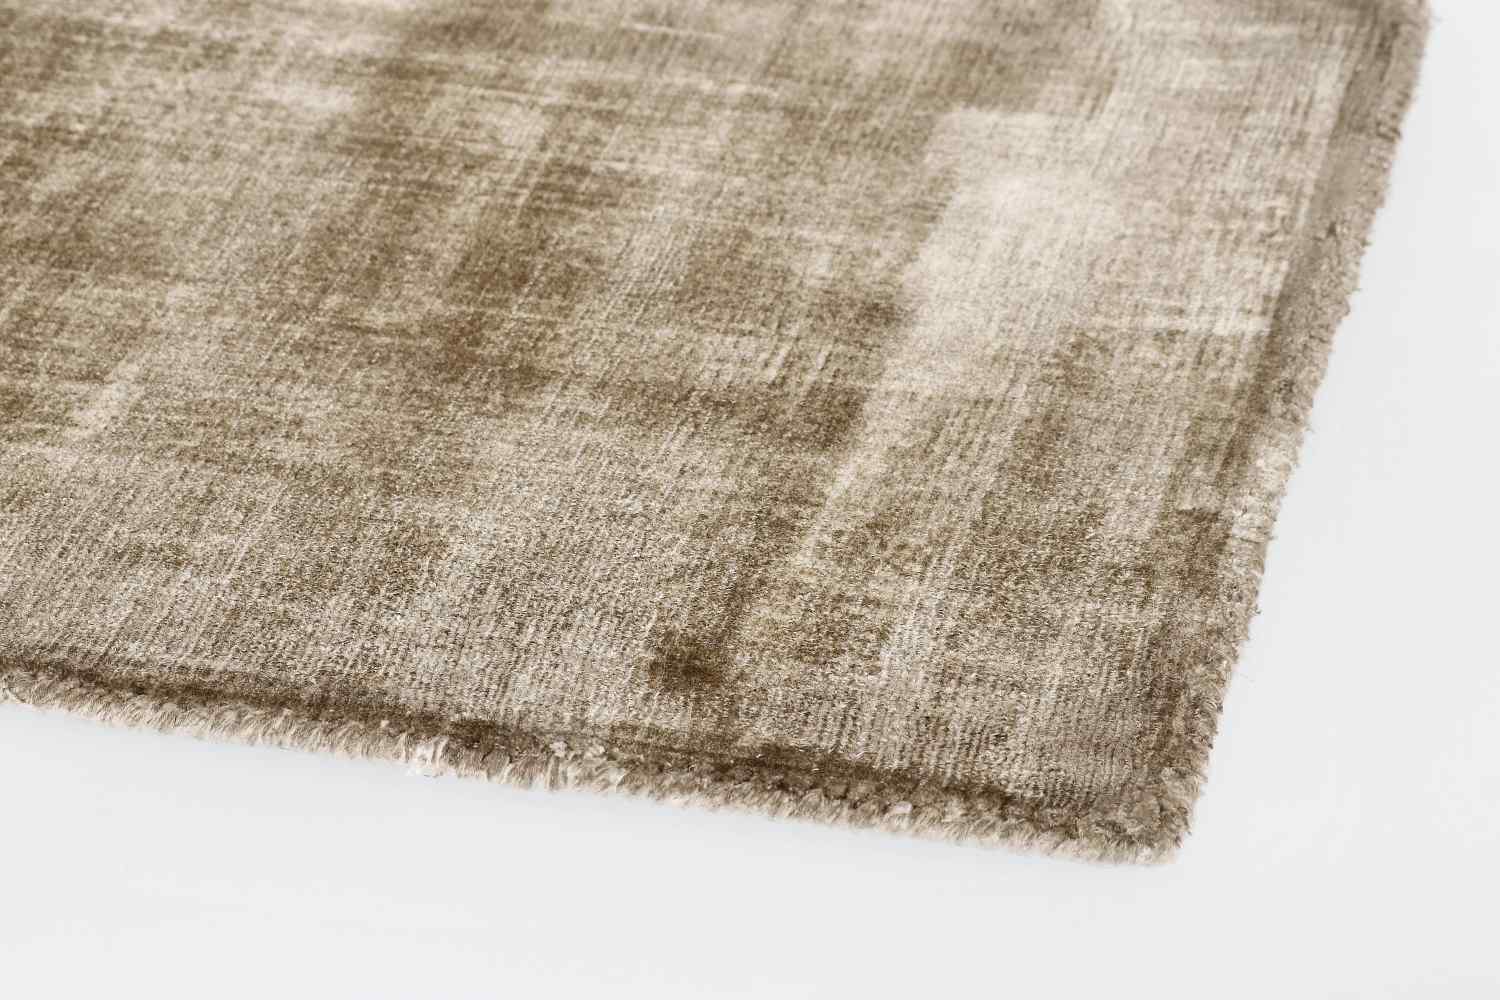 Der Teppich Rashmi überzeugt mit seinem modernen Design. Gefertigt wurde die Vorderseite aus Viskose und die Rückseite aus Baumwolle. Der Teppich besitzt eine braunen Farbton und die Maße von 160x230 cm.